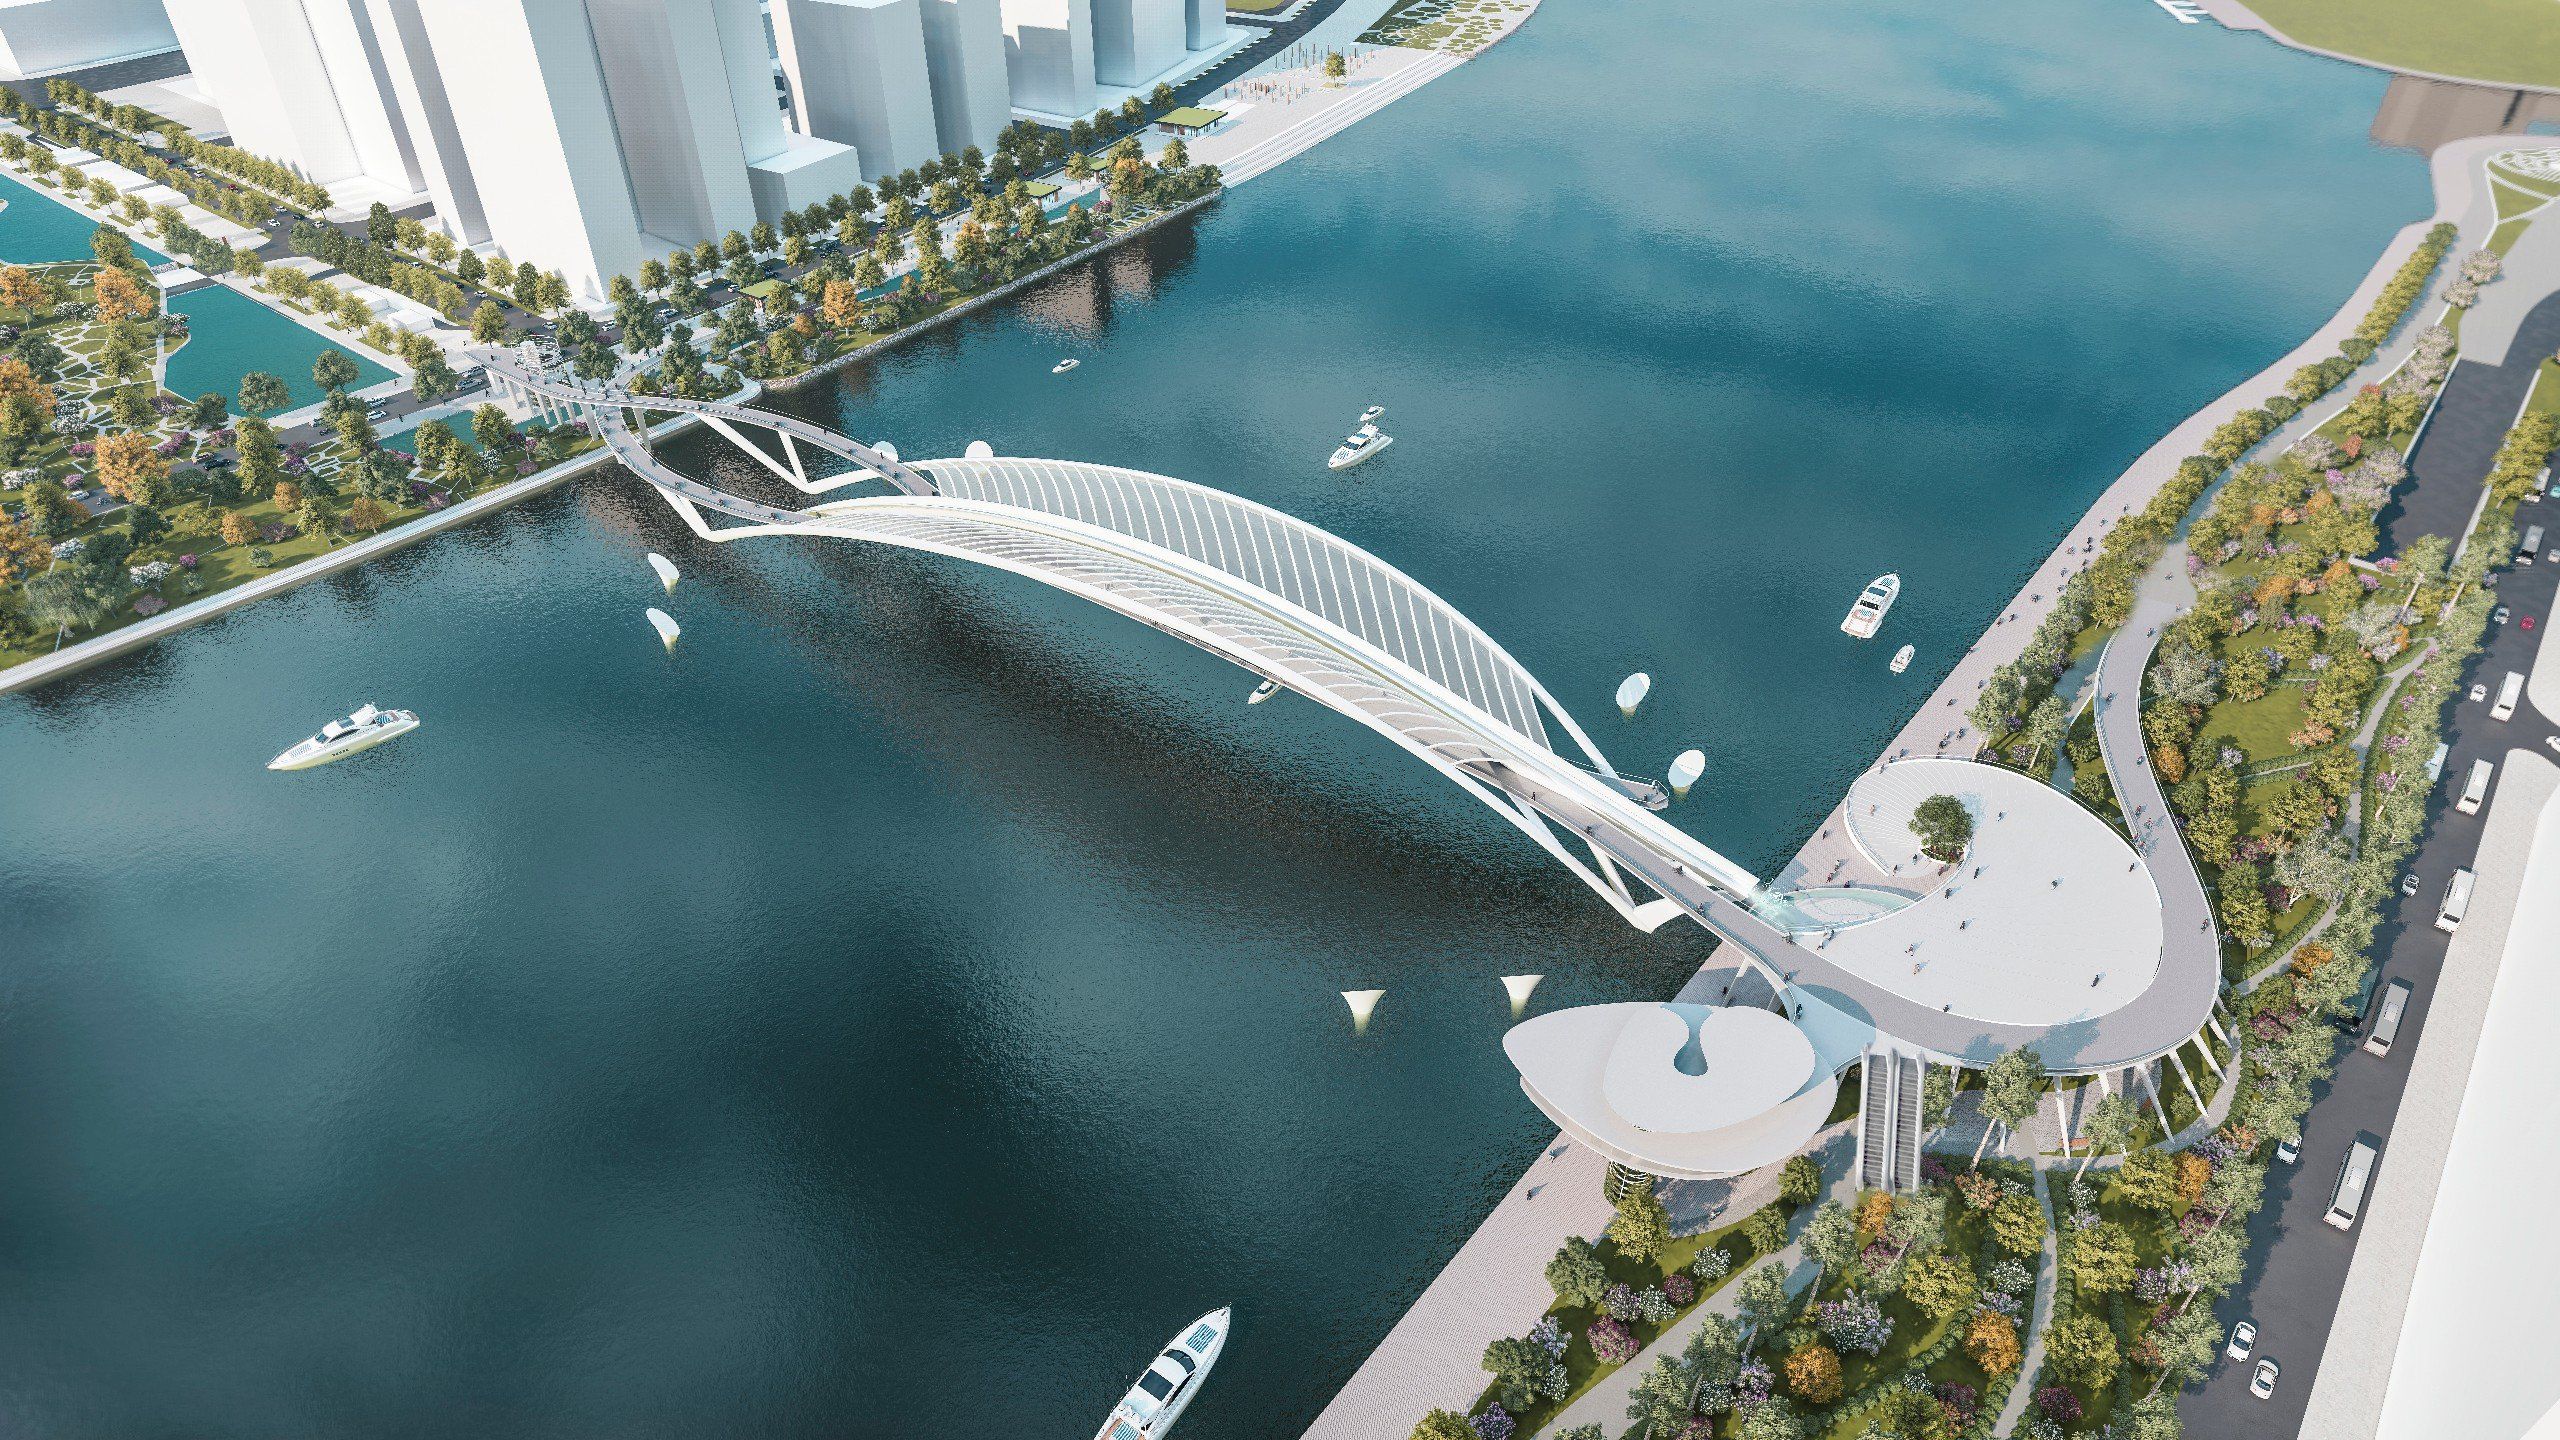 Mới đây, UBND TP.HCM đã phê duyệt phương án thiết kế kiến trúc cầu đi bộ bắc qua sông Sài Gòn theo hình tượng lá dừa nước – hình ảnh quen thuộc của miền Nam. Thiết kế cầu được thực hiện bởi liên doanh Liên danh Chodai - Takashi Niwa Architects và Chodai Kisojiban Việt Nam.